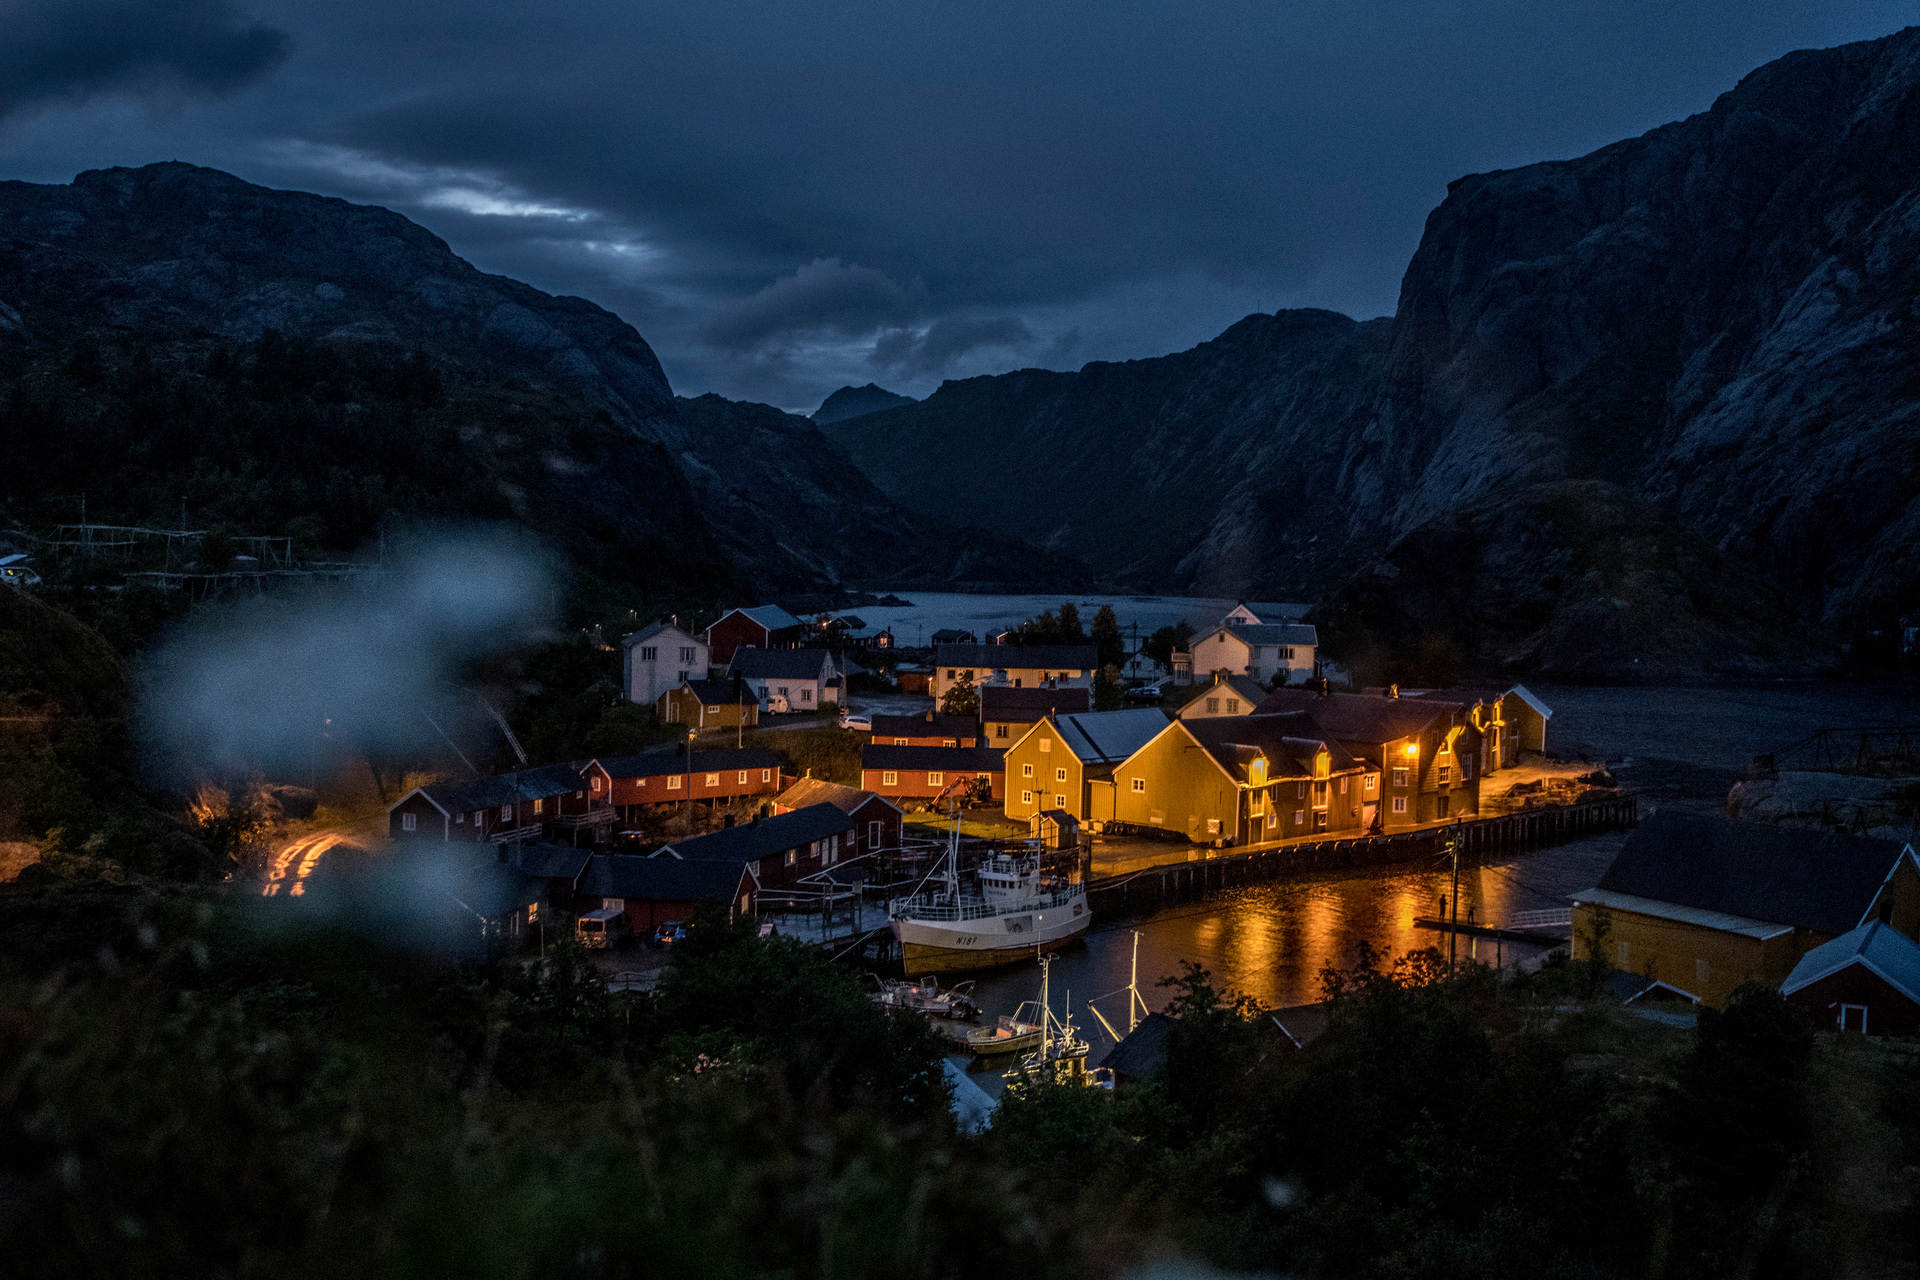 Night in the fishing village Nusfjord in Lofoten_Thomas Rasmus Skaug - VisitNorway